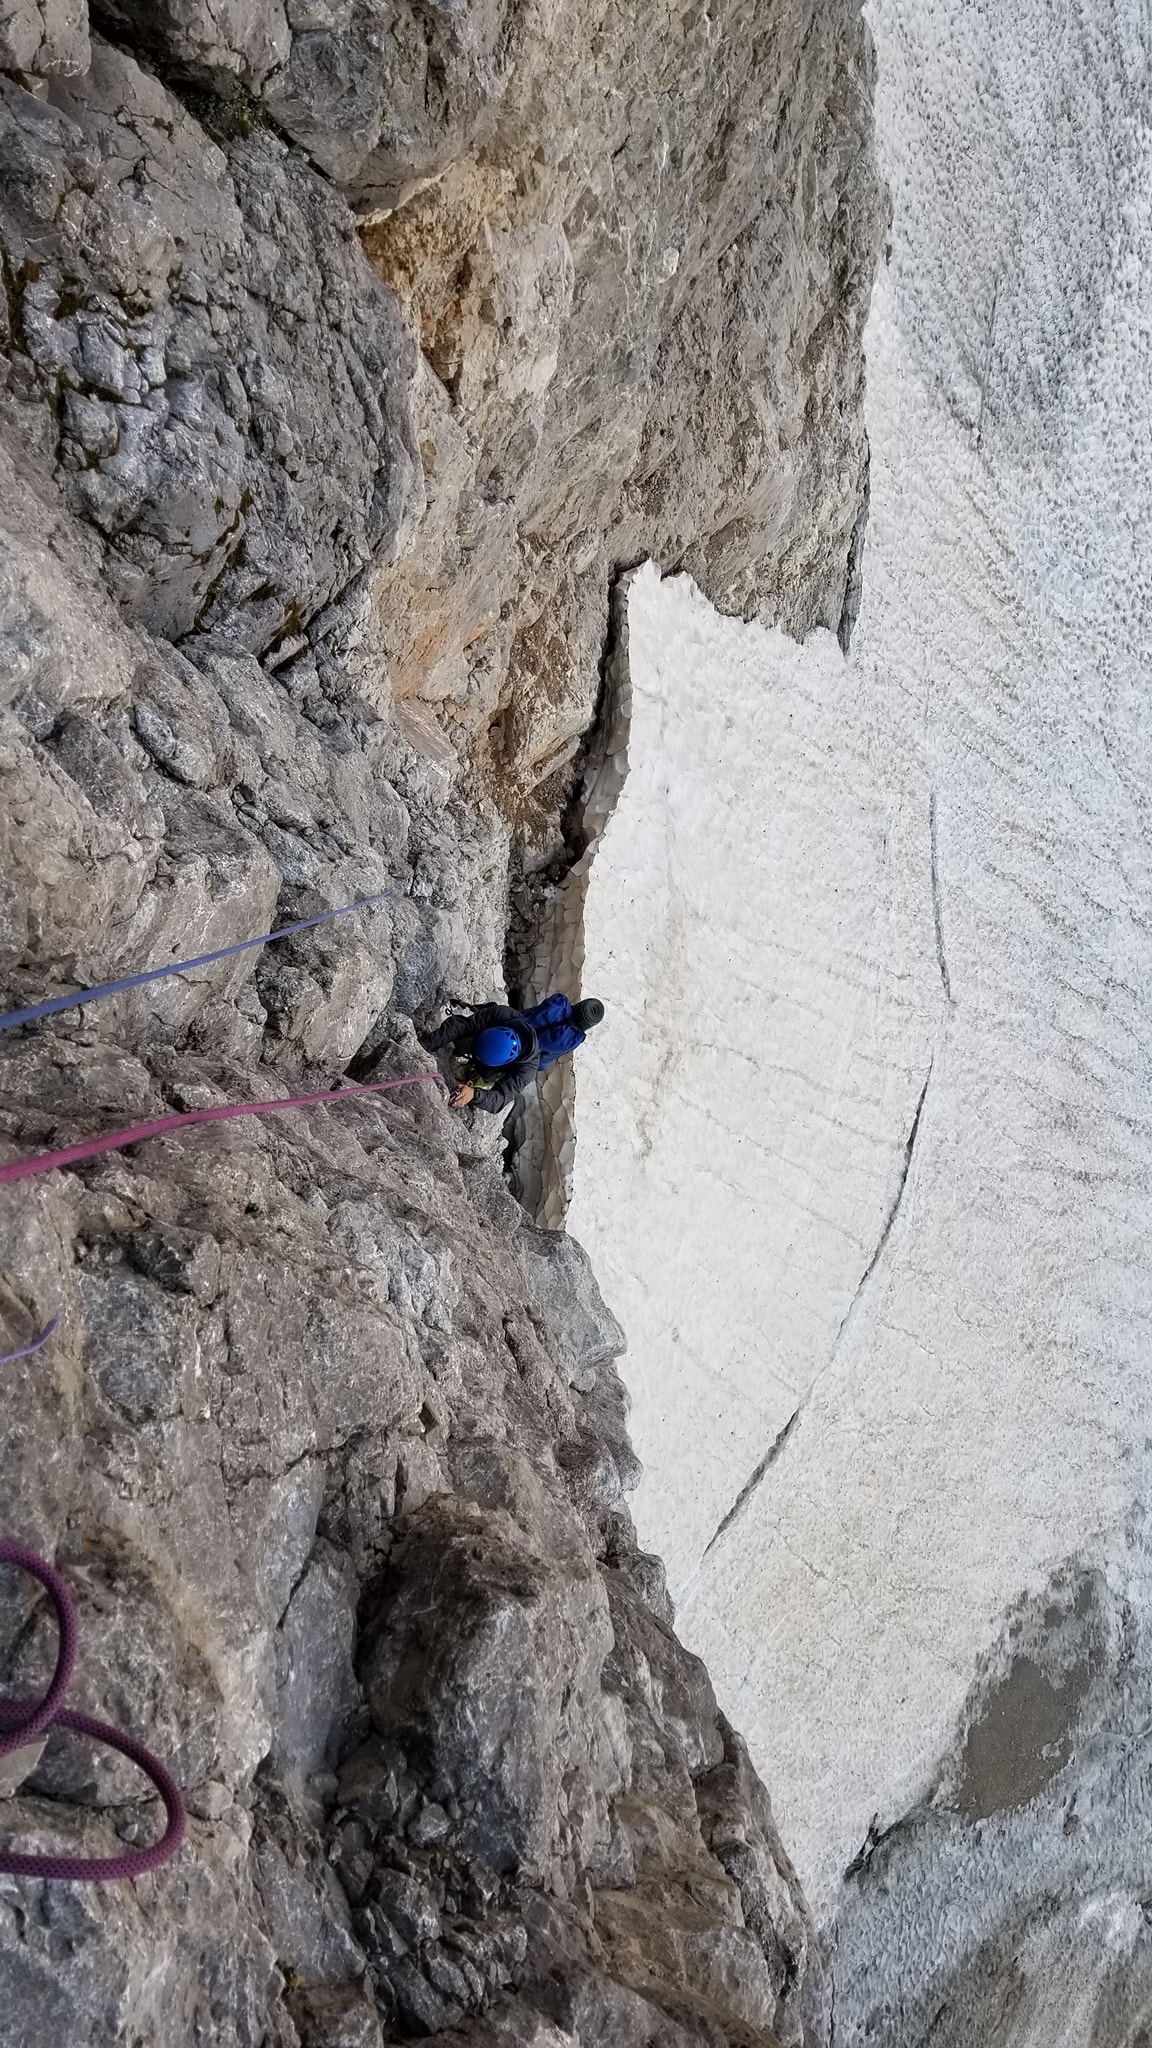 Украинские альпинисты открыли в Турции два новых скальных маршрута. Фото Михаил Фомин